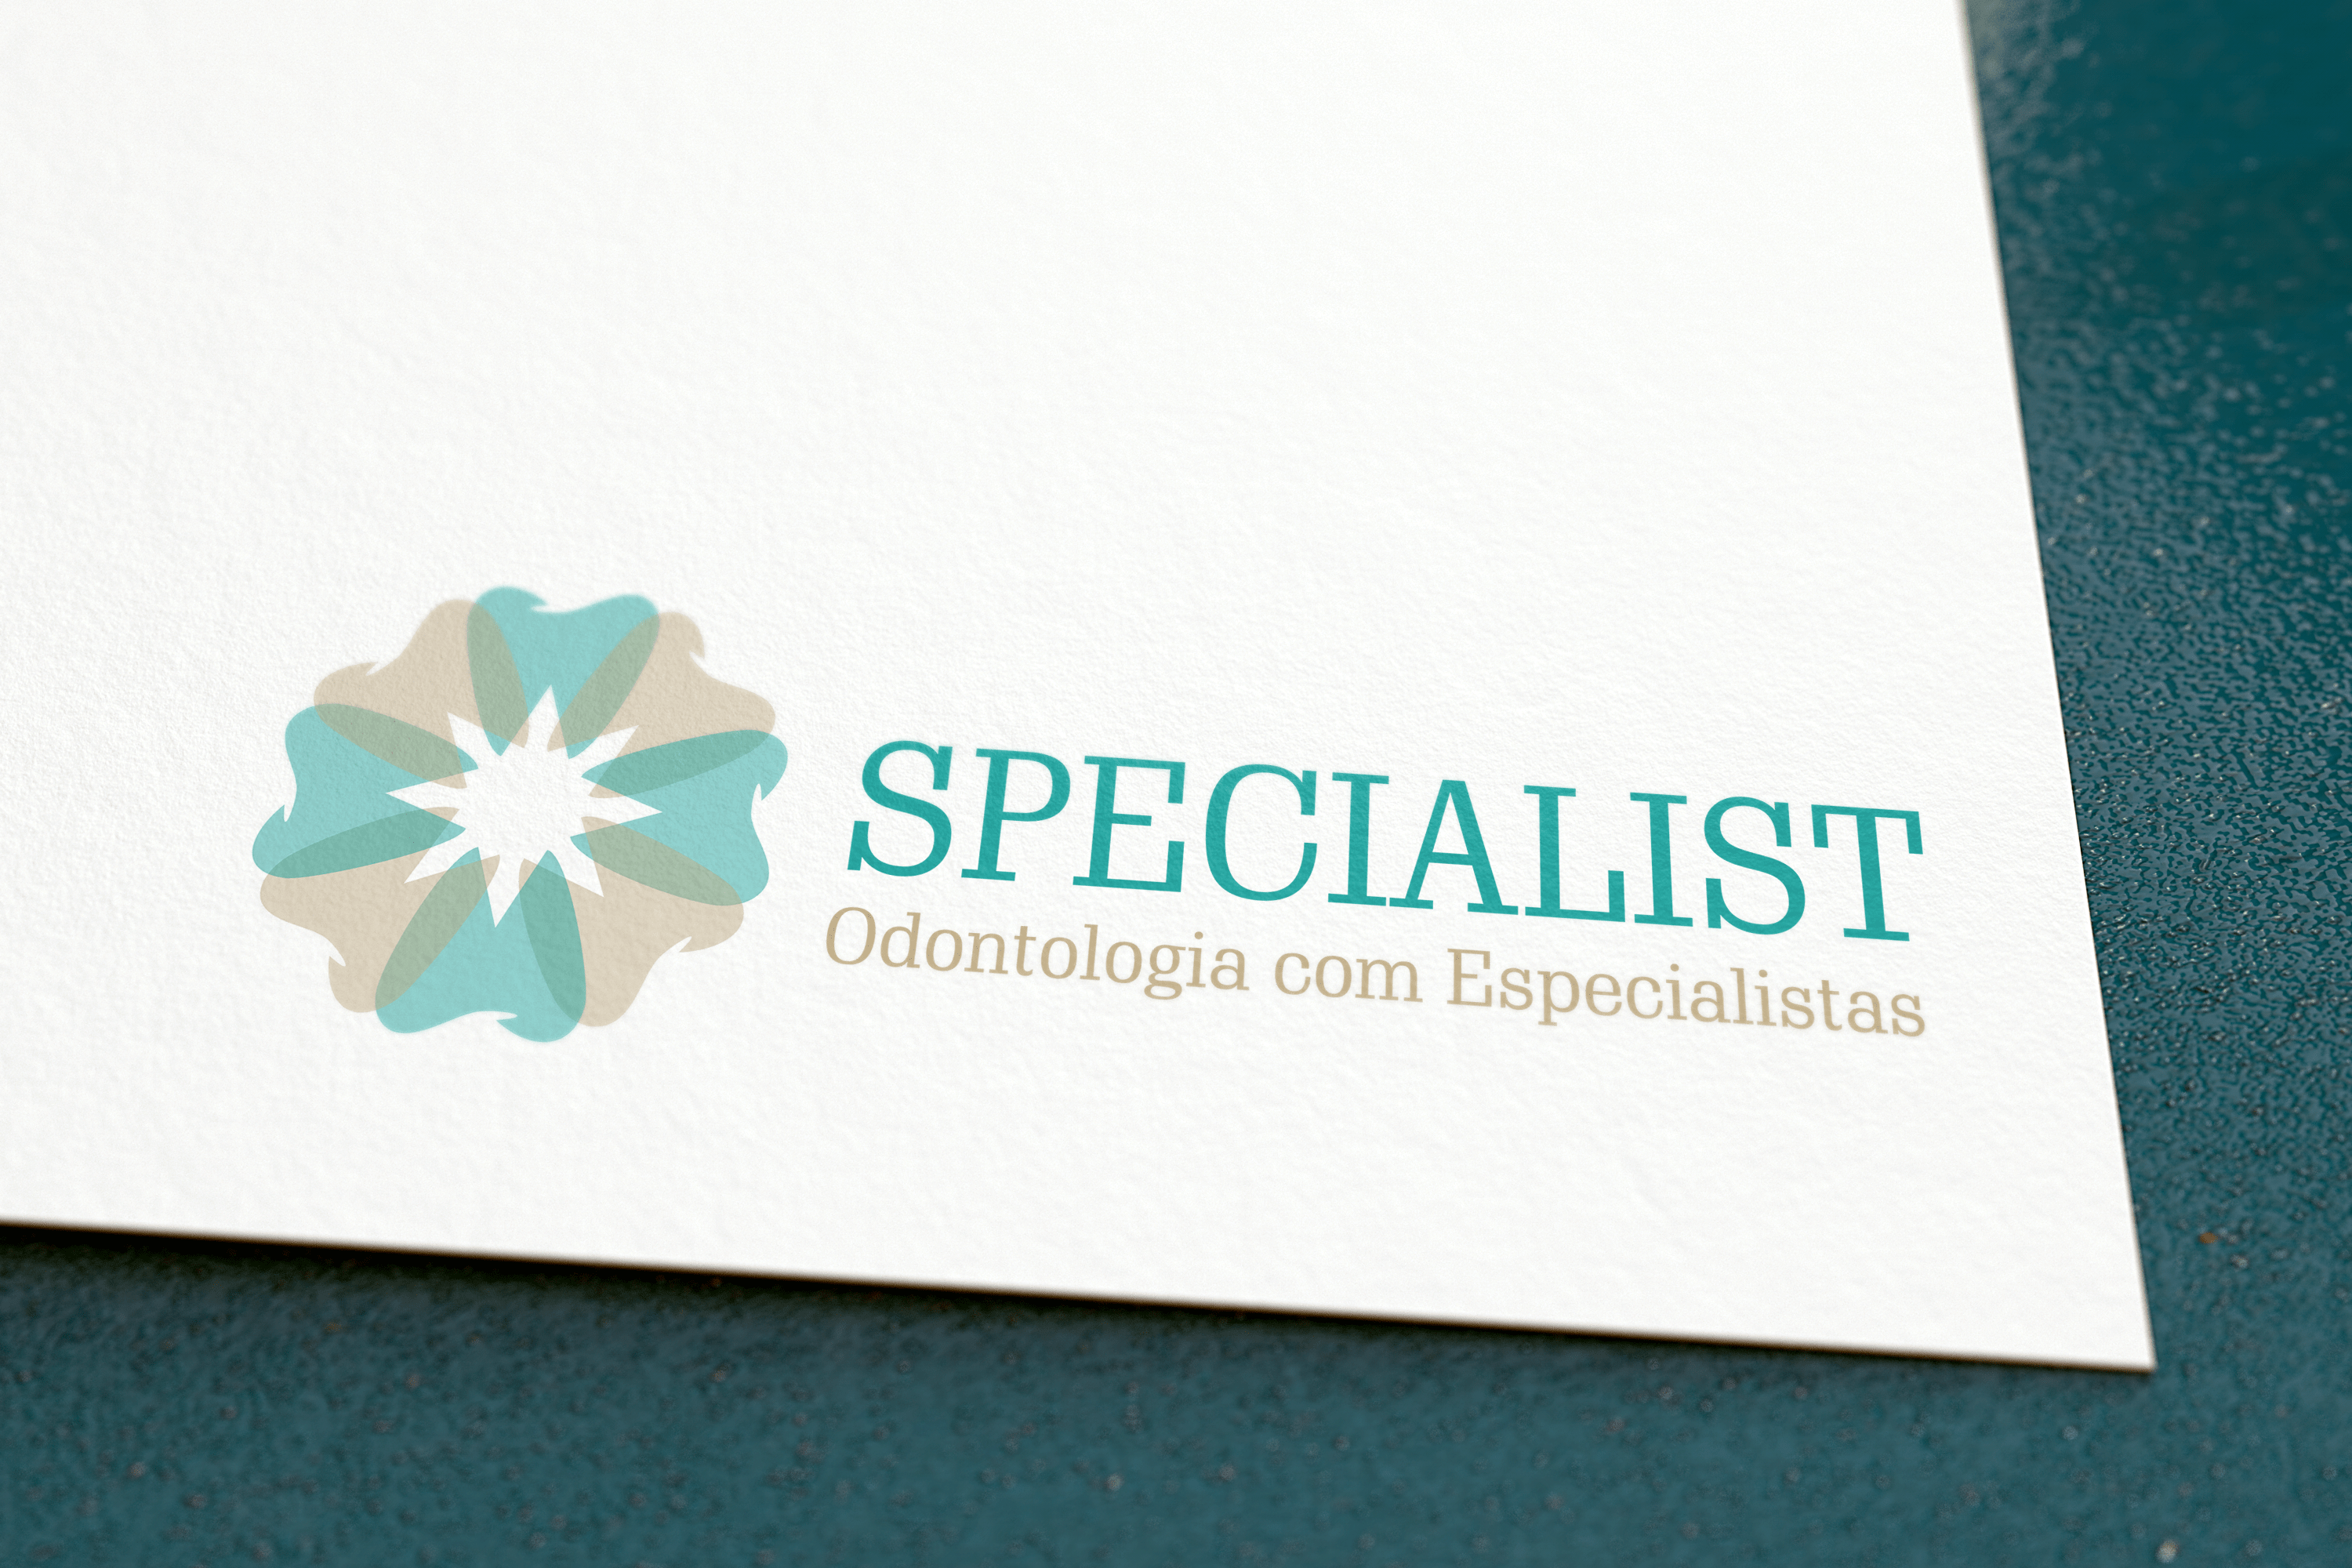 SPECIALIST - ODONTOLOGIA COM ESPECIALISTAS